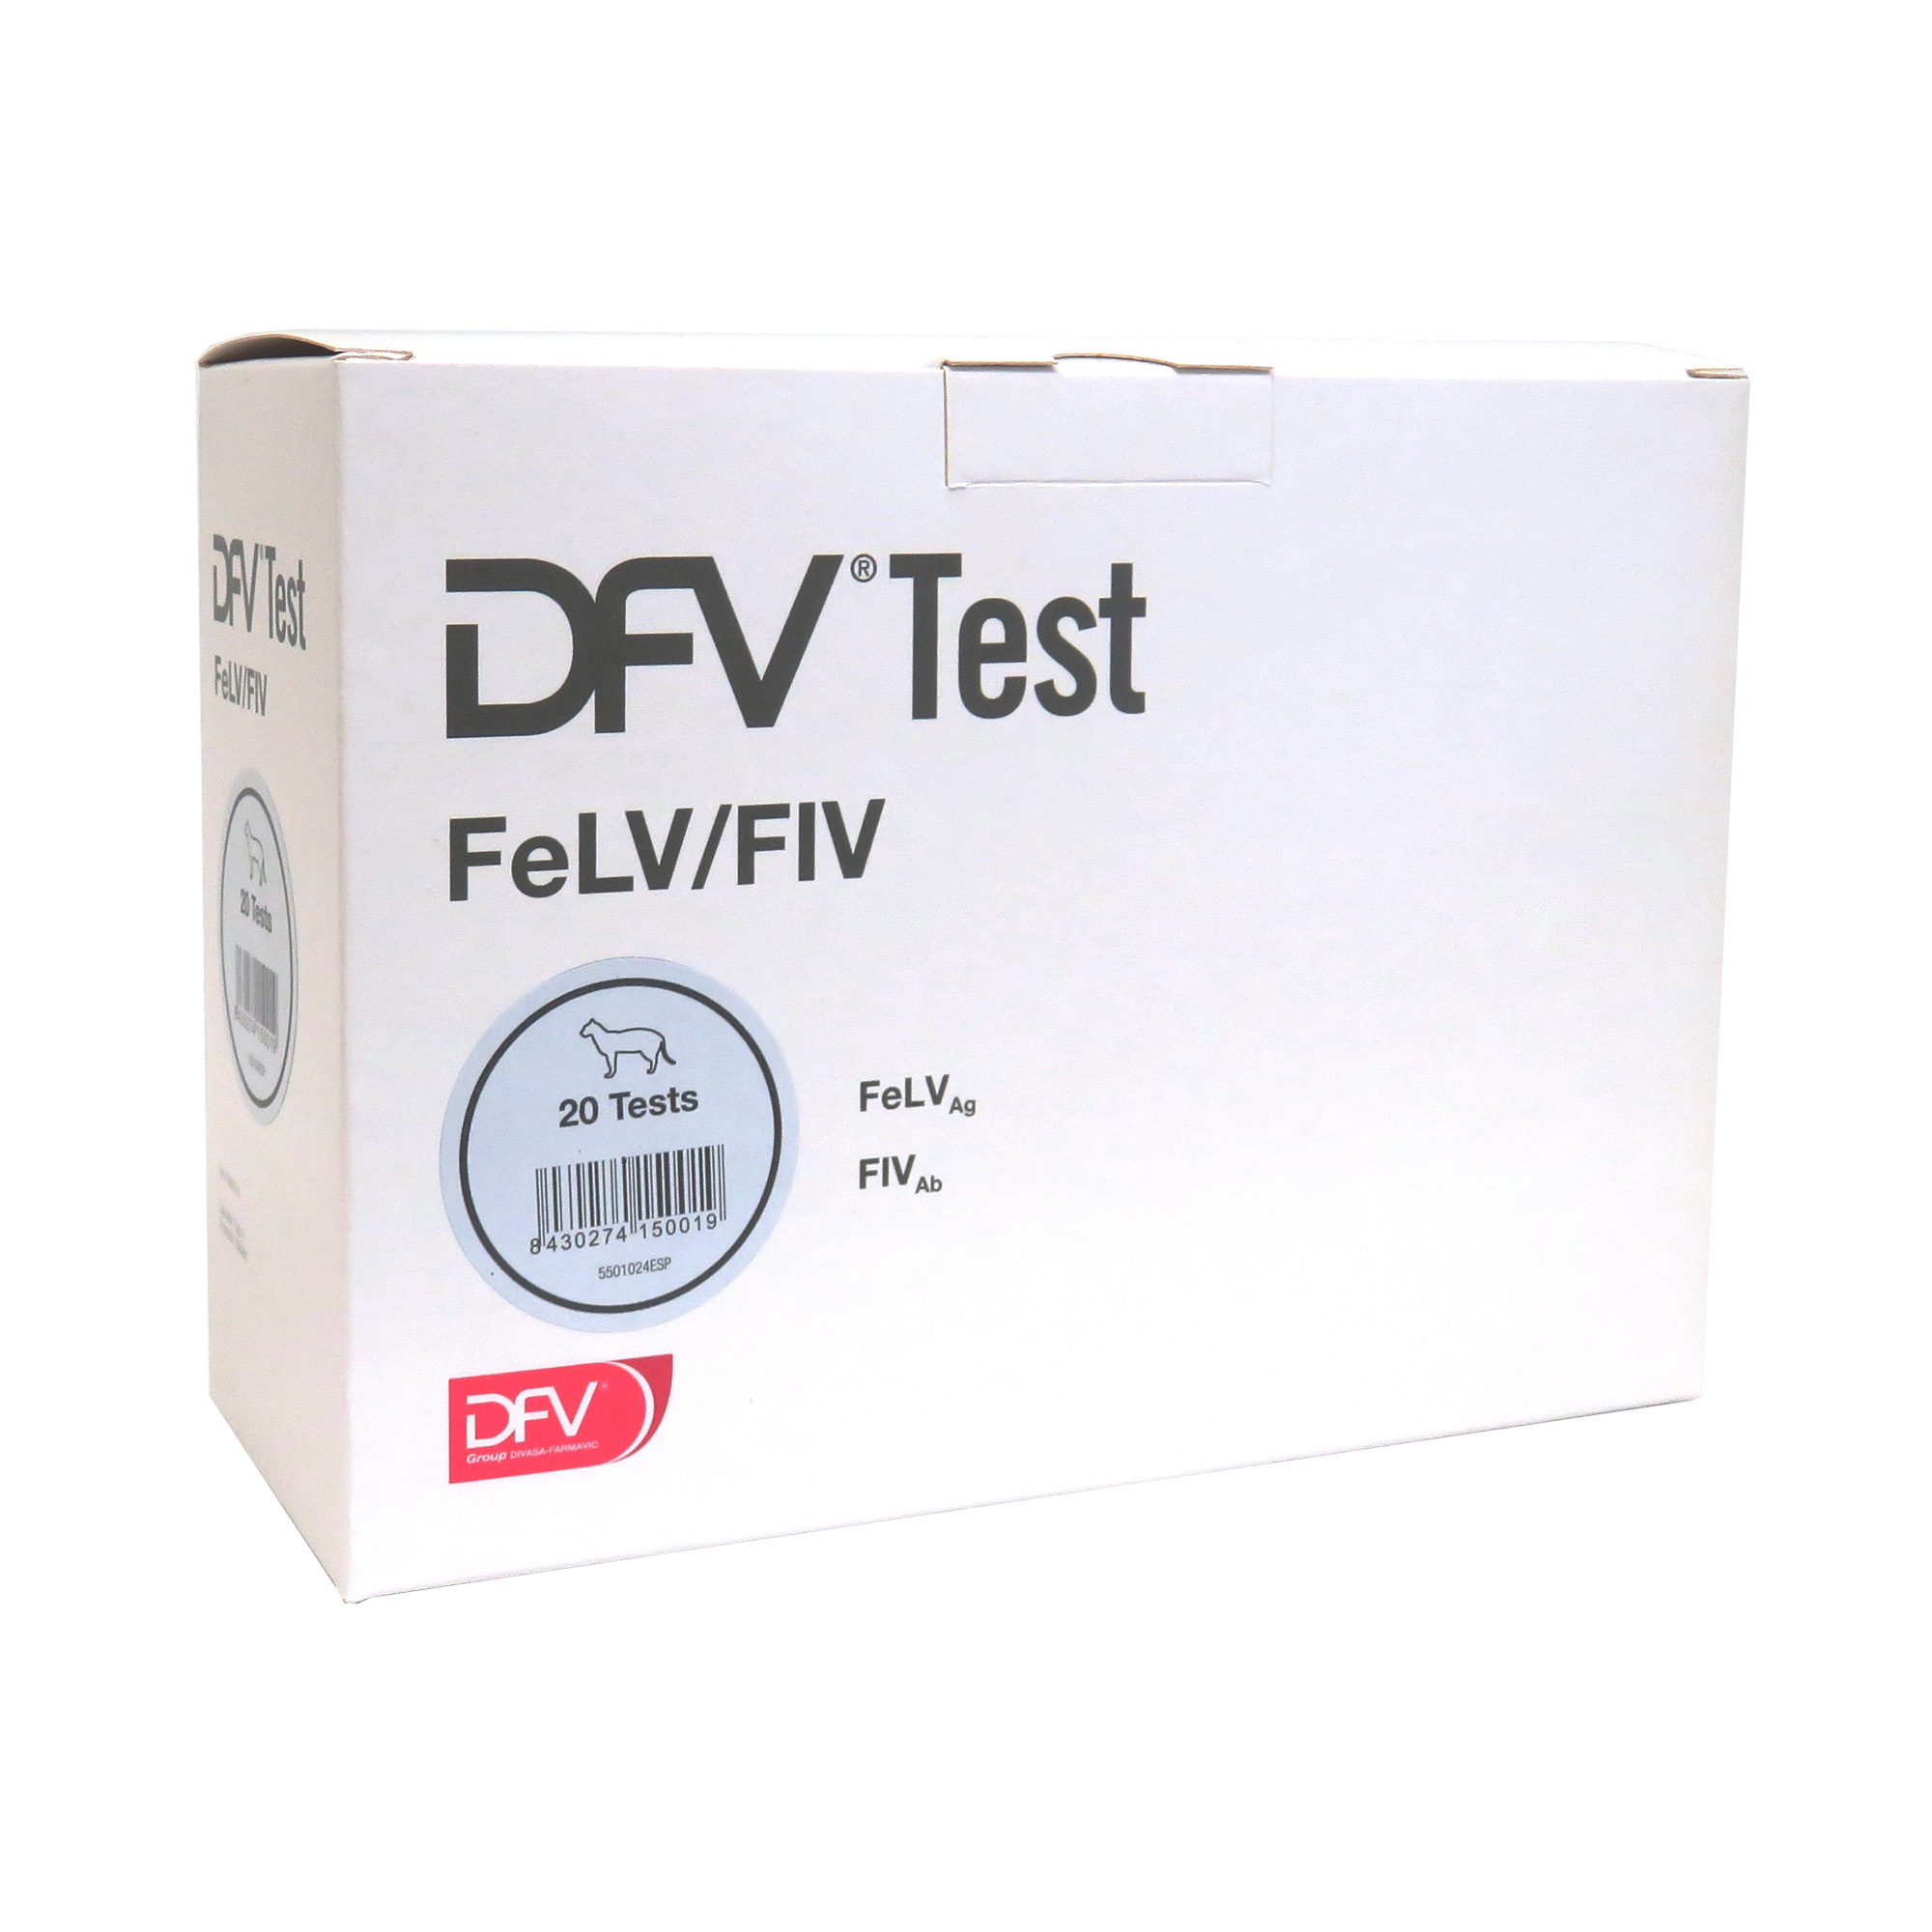 DFV Test FeLV / FIV